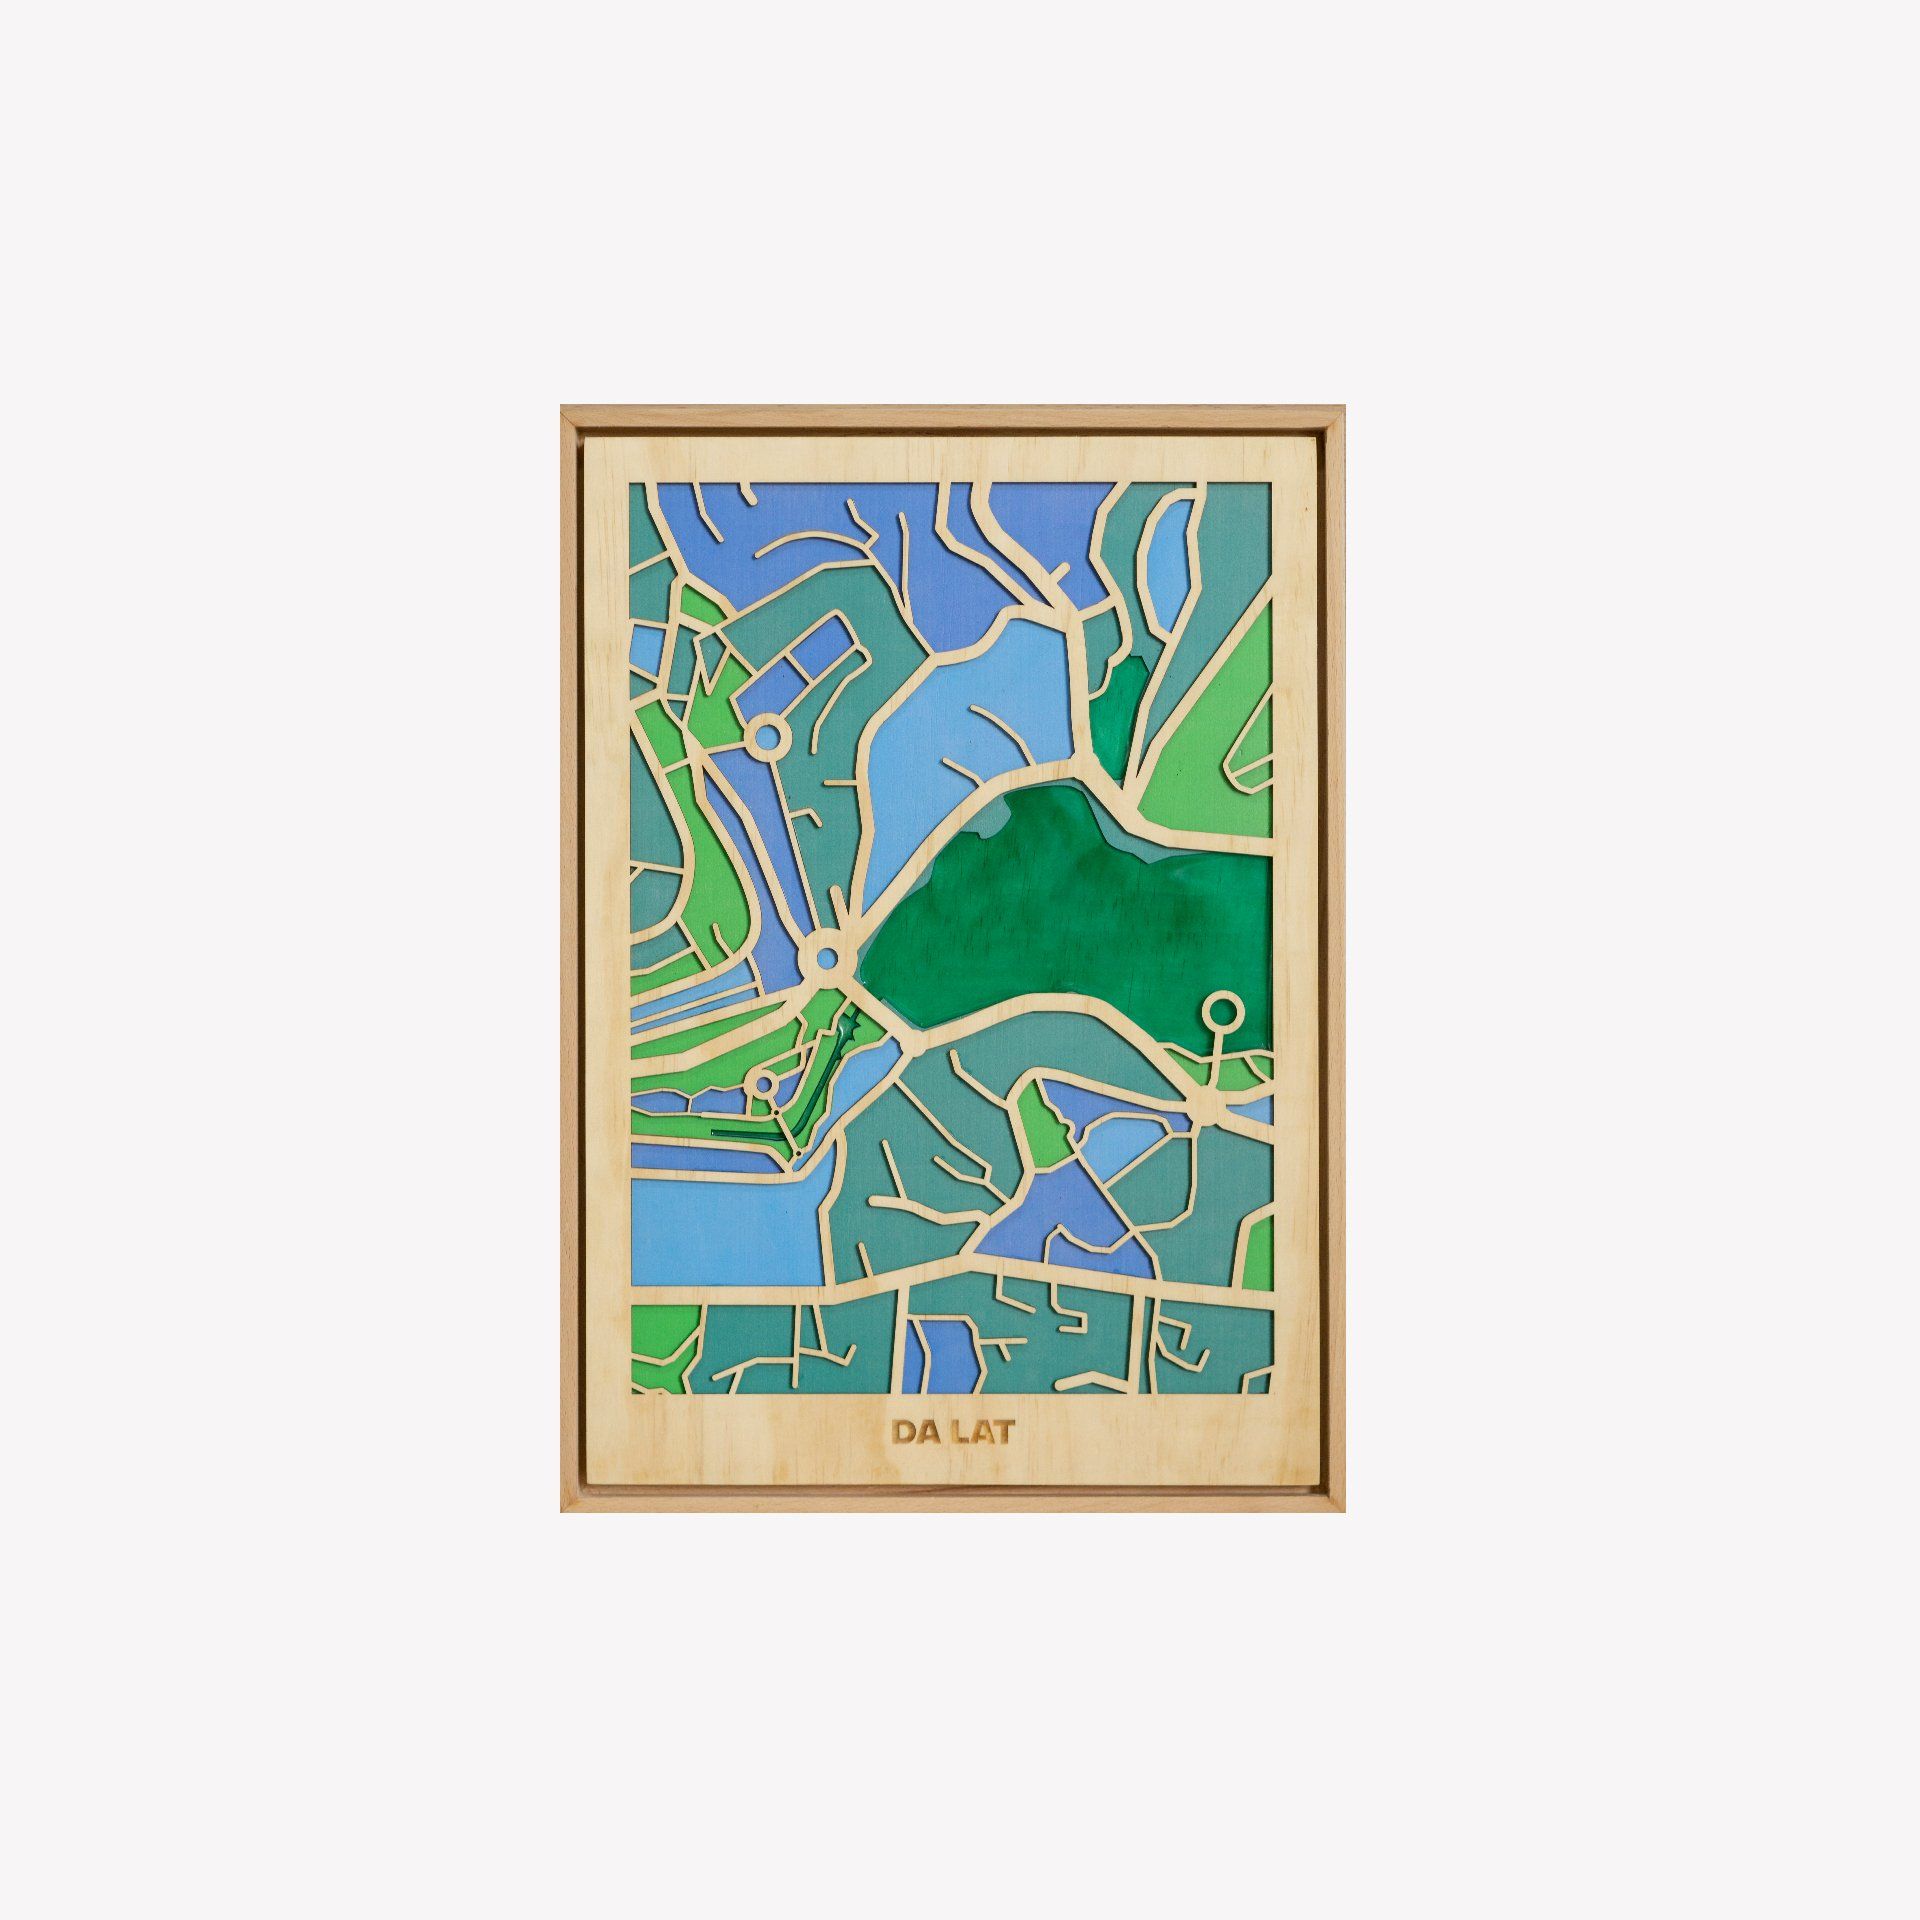  Wooden City Map - Đà Lạt 